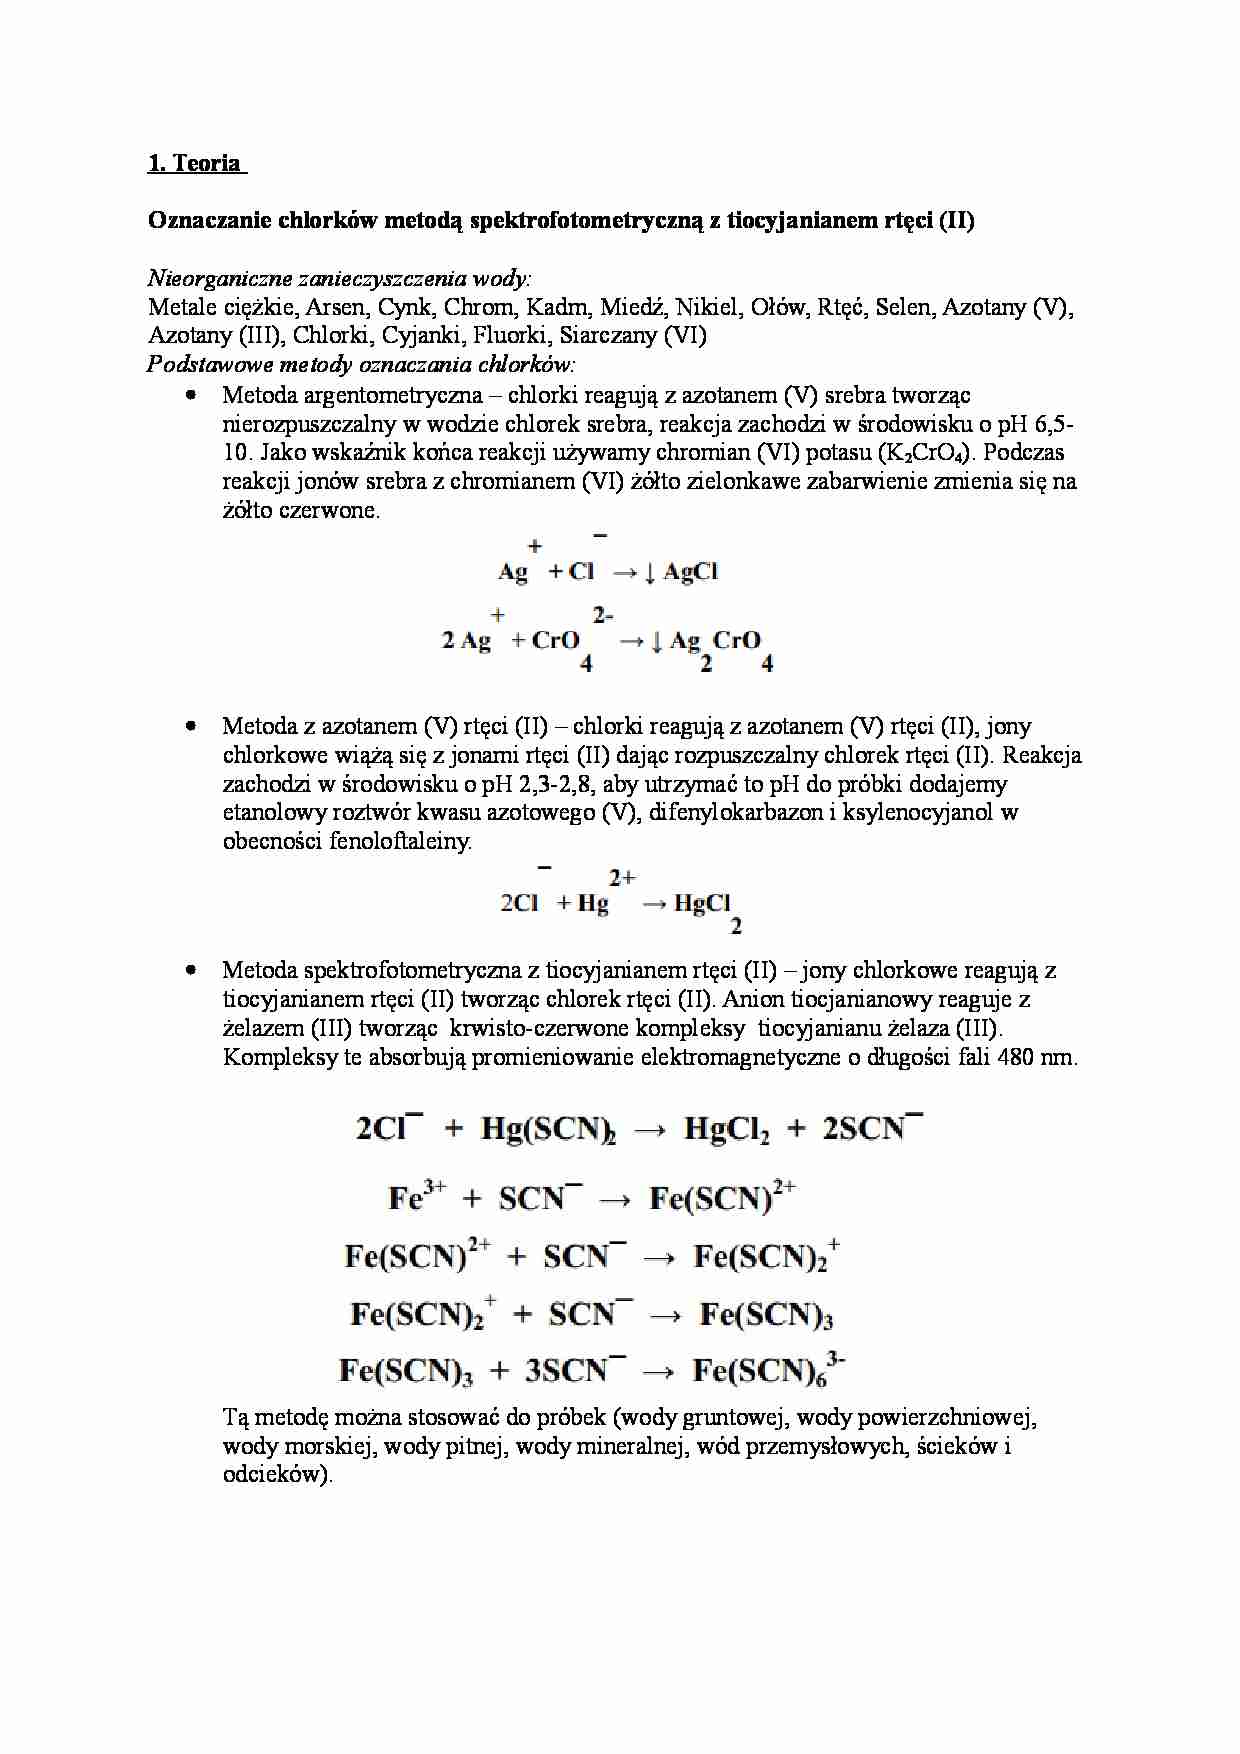 Oznaczanie chlorków metodą spektrofotometryczną z tiocyjanianem rtęci (II) - strona 1